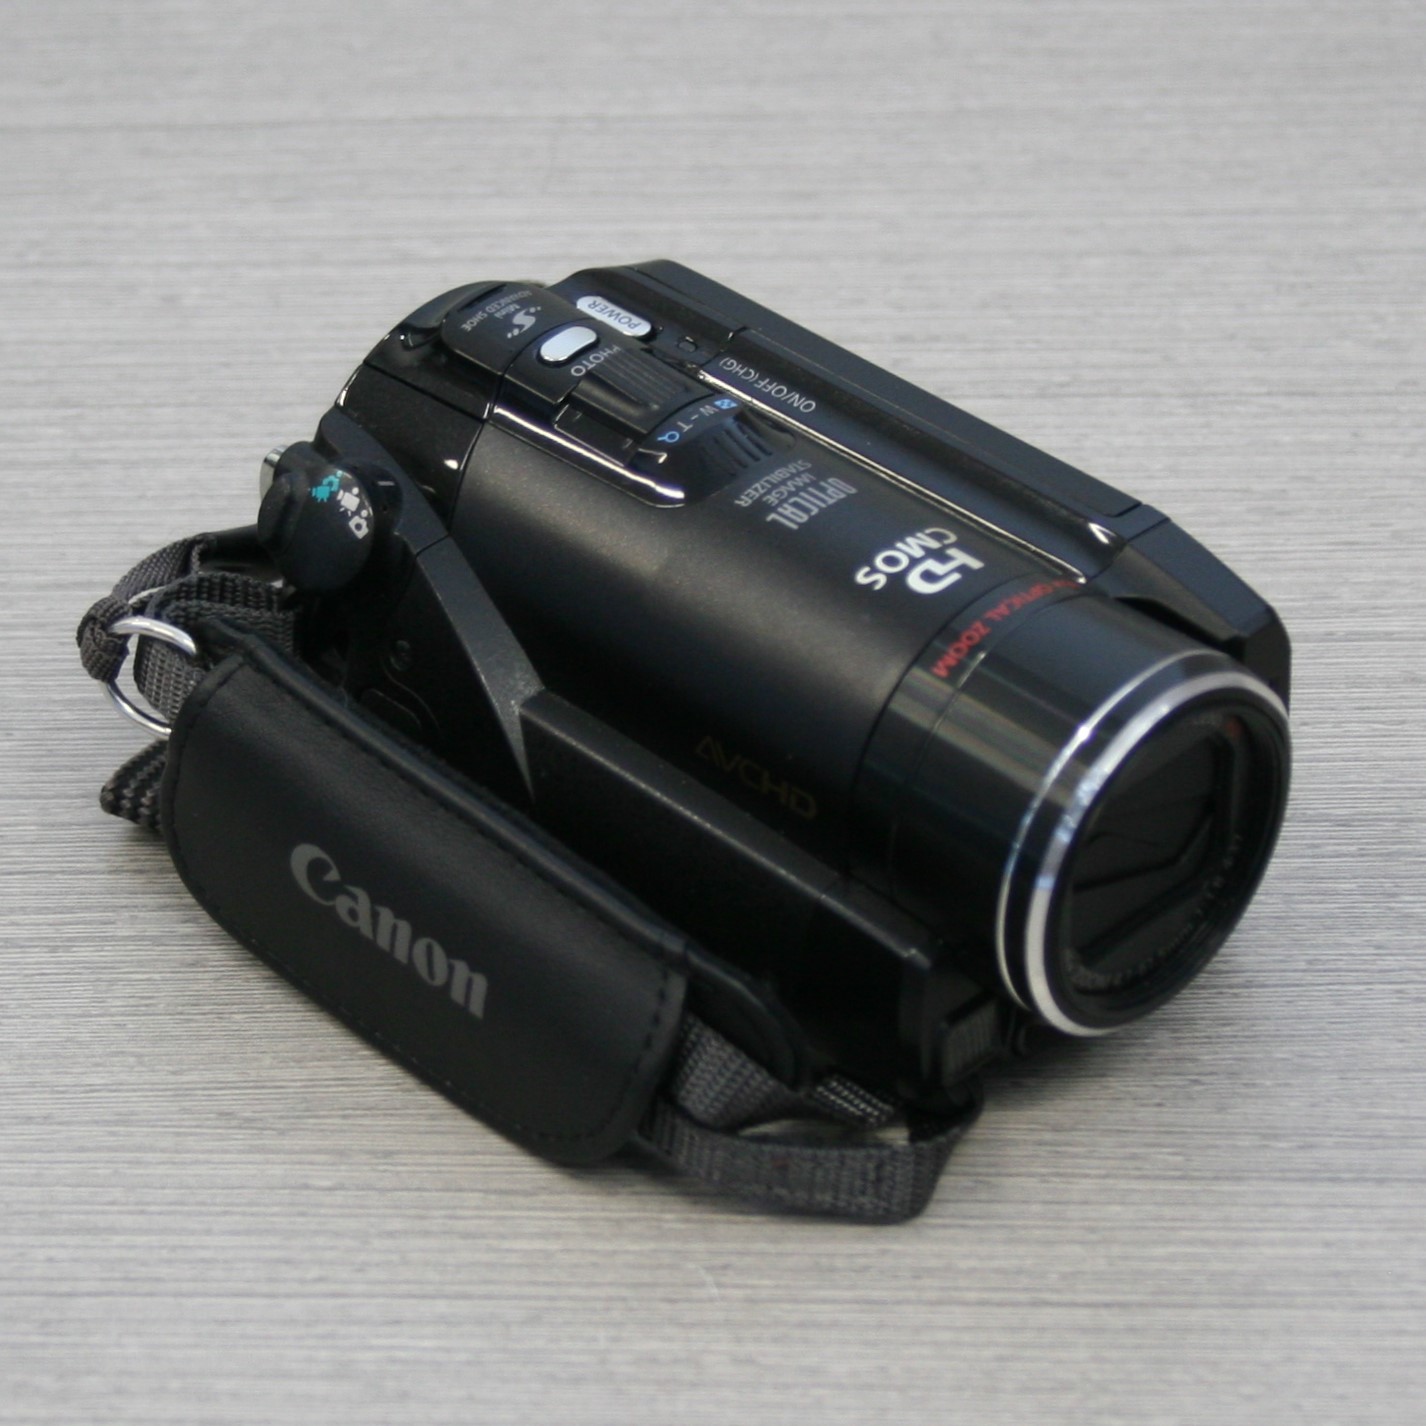 Canon Camcorder